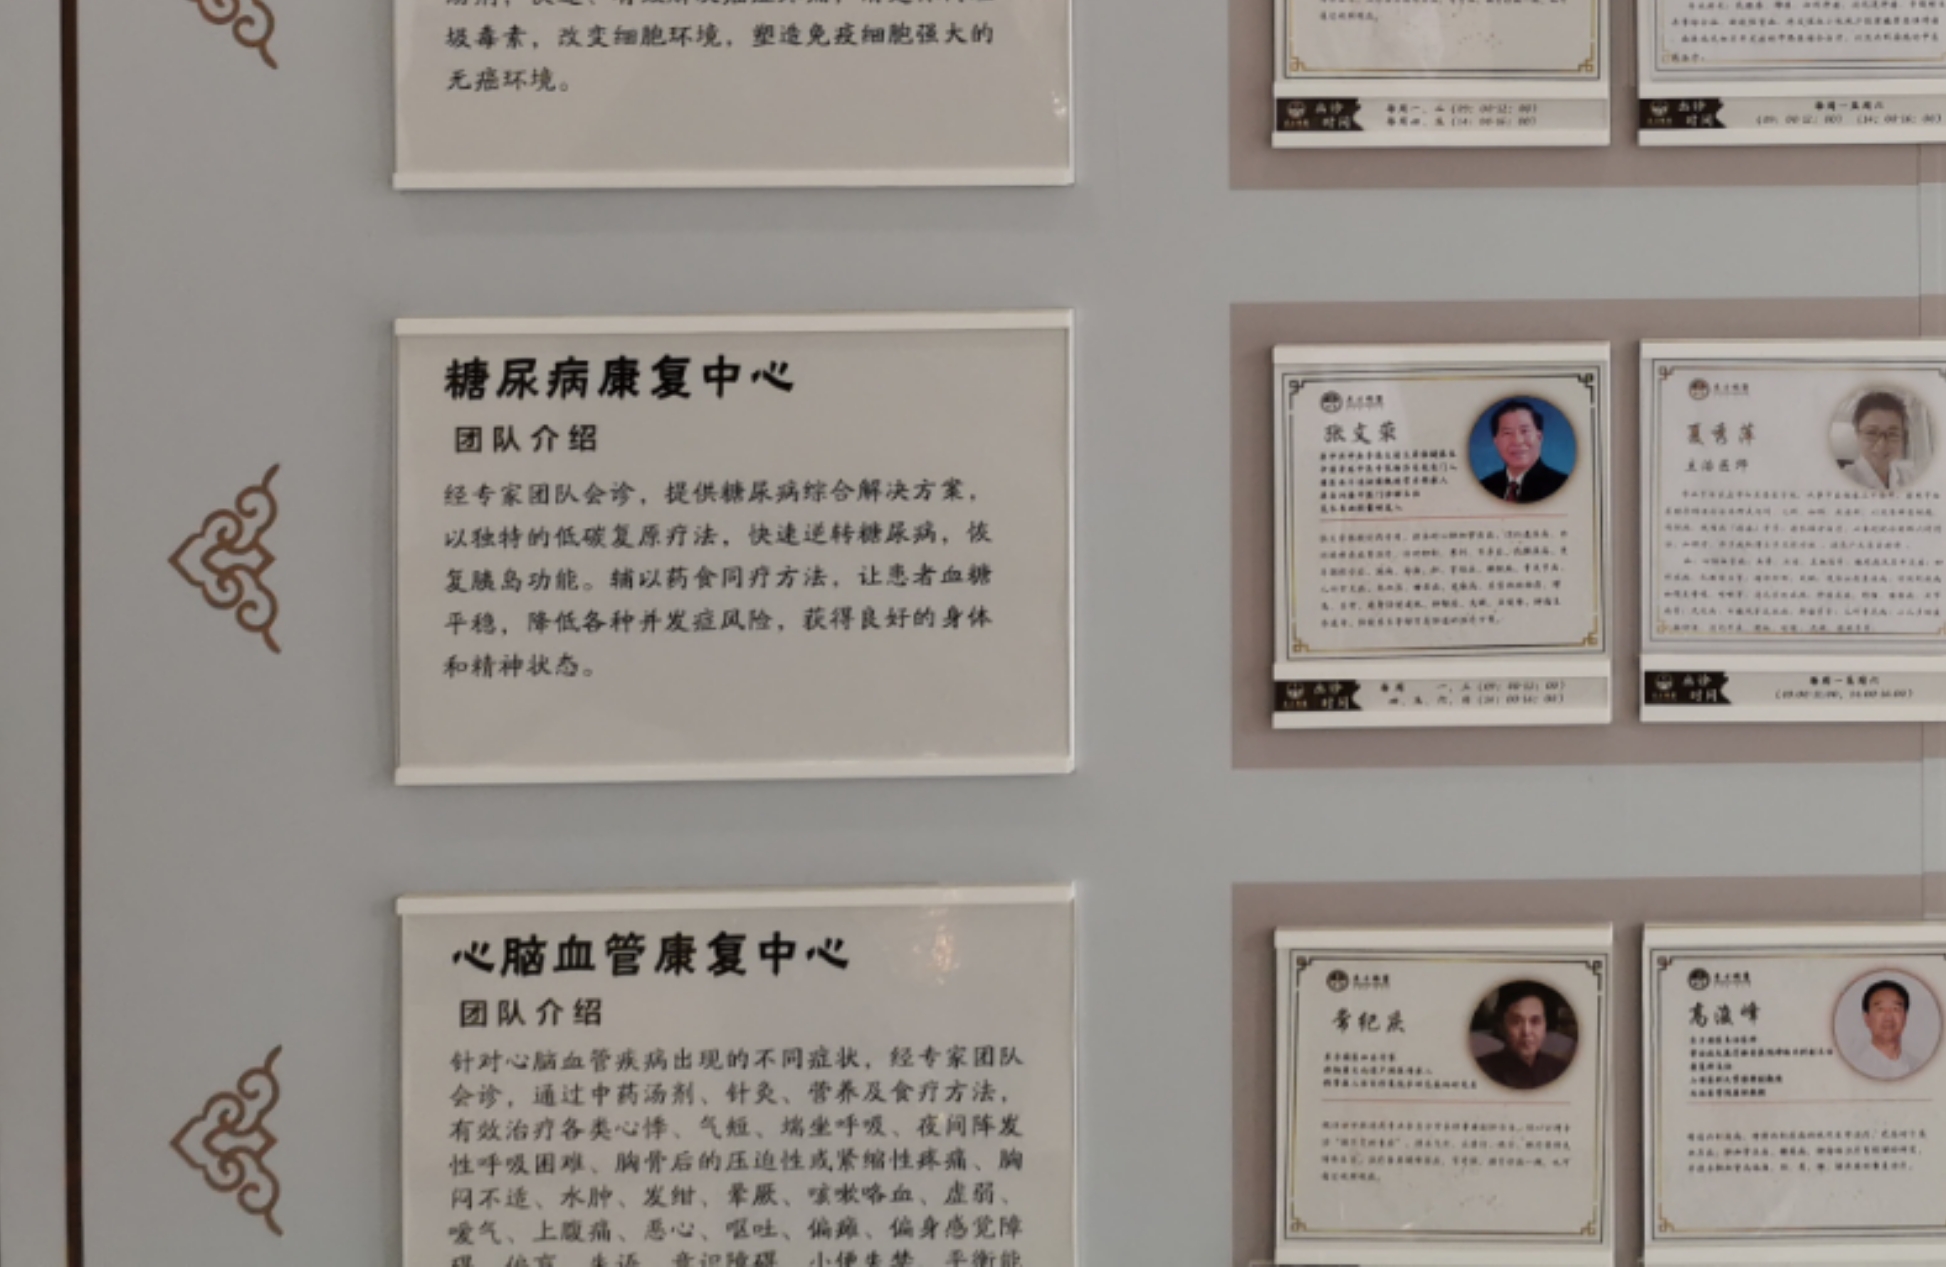 北京金典糖尿病医院挂有张文荣的介绍。新京报 汪畅 摄